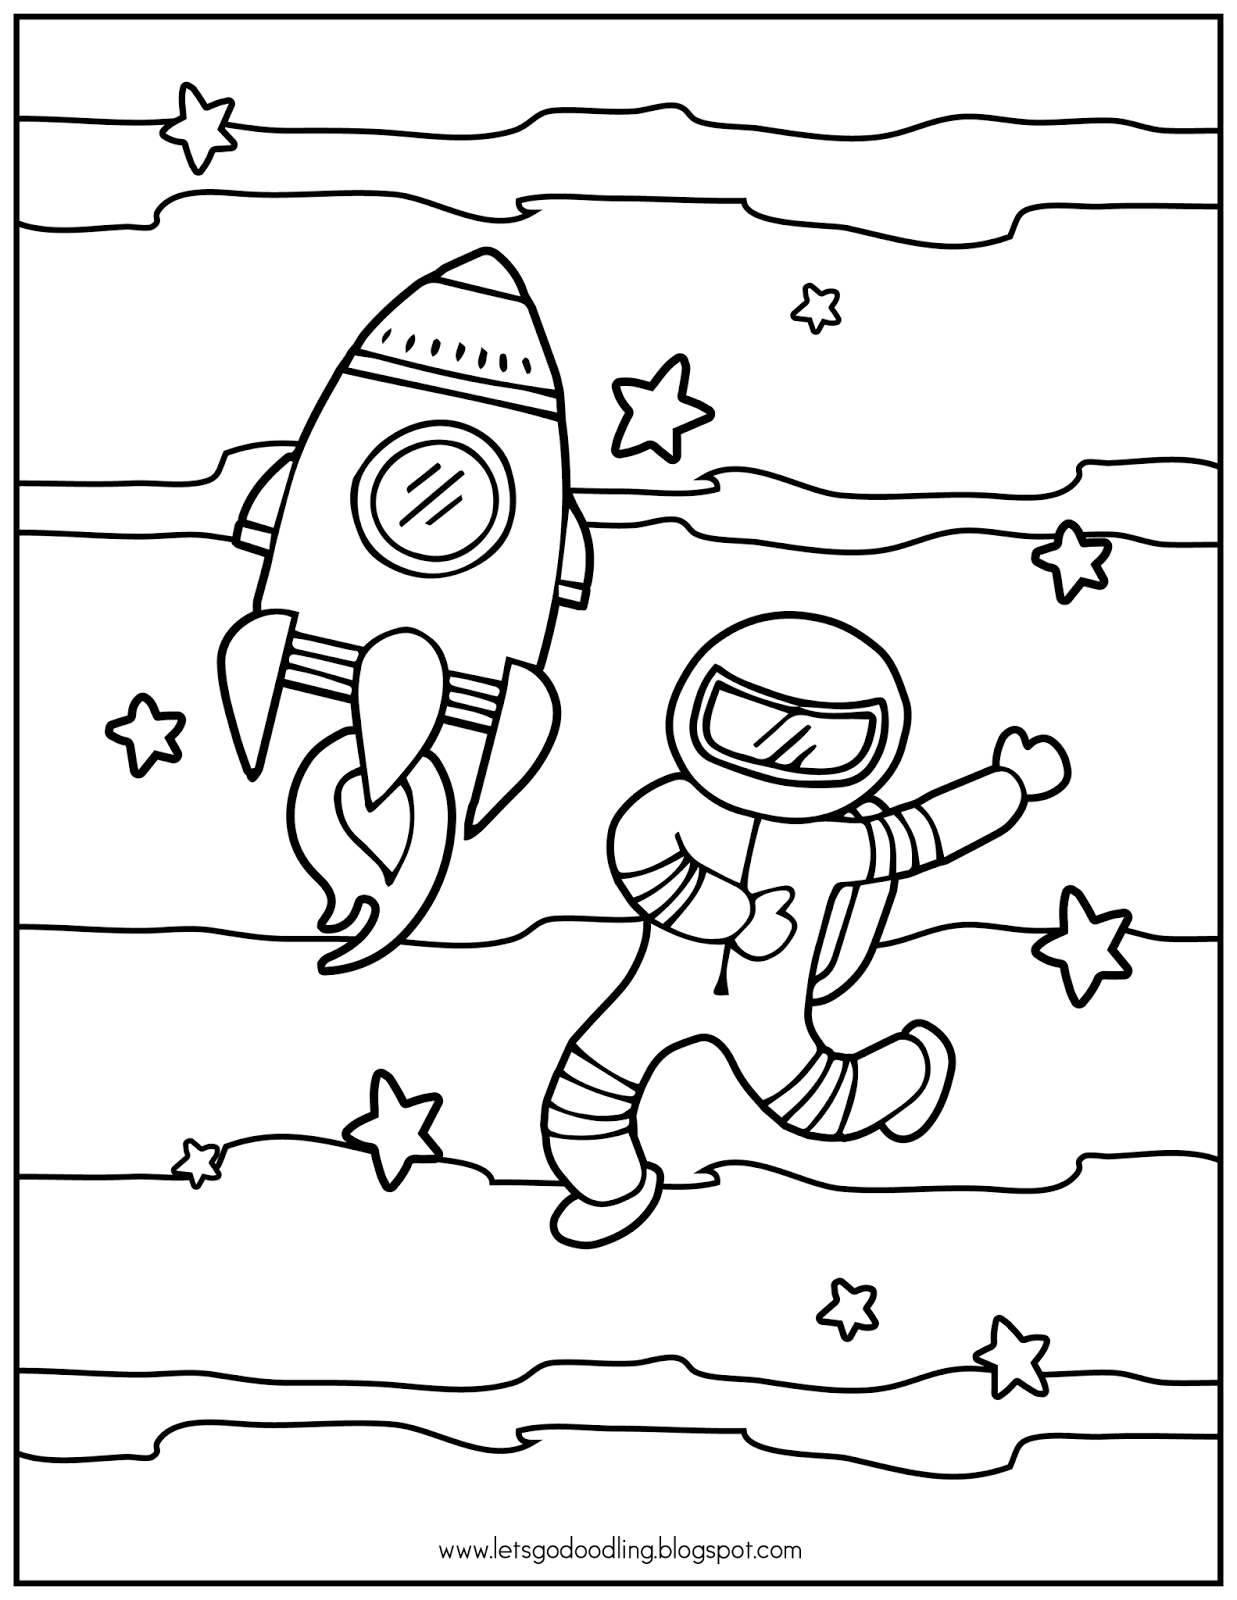 Космонавт раскраска для детей. Космос раскраска для детей. Рисунок ко Дню космонавтики. Раскраска день космонавтики для детей. Шаблон космонавта для поделки ко дню космонавтики